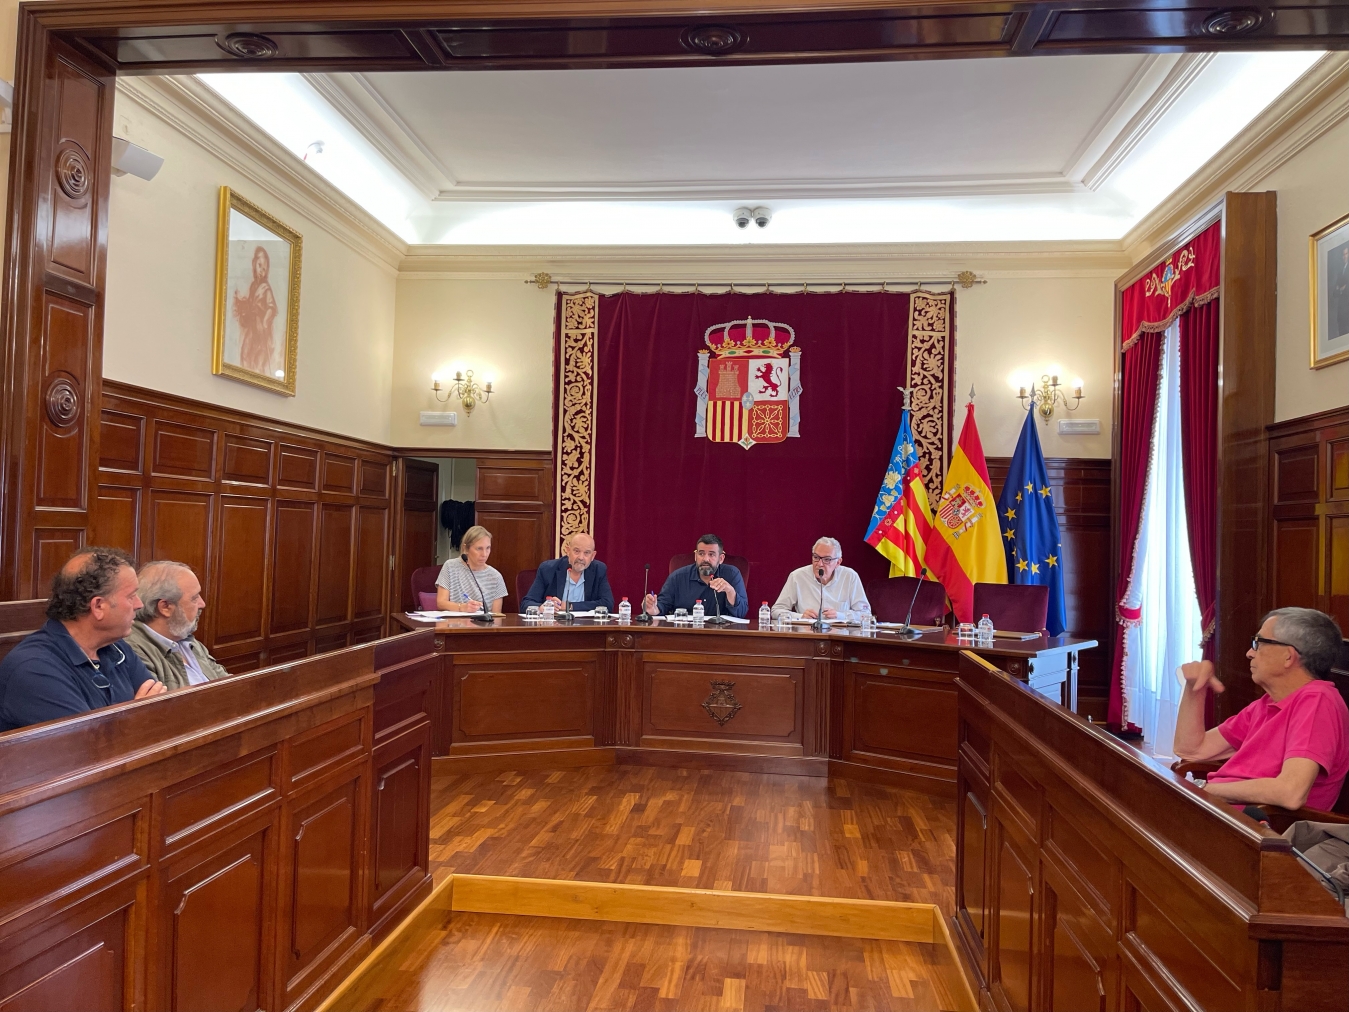 L'Escola Taurina de la Diputació fomenta l'activitat i tradició taurina als pobles de Castelló